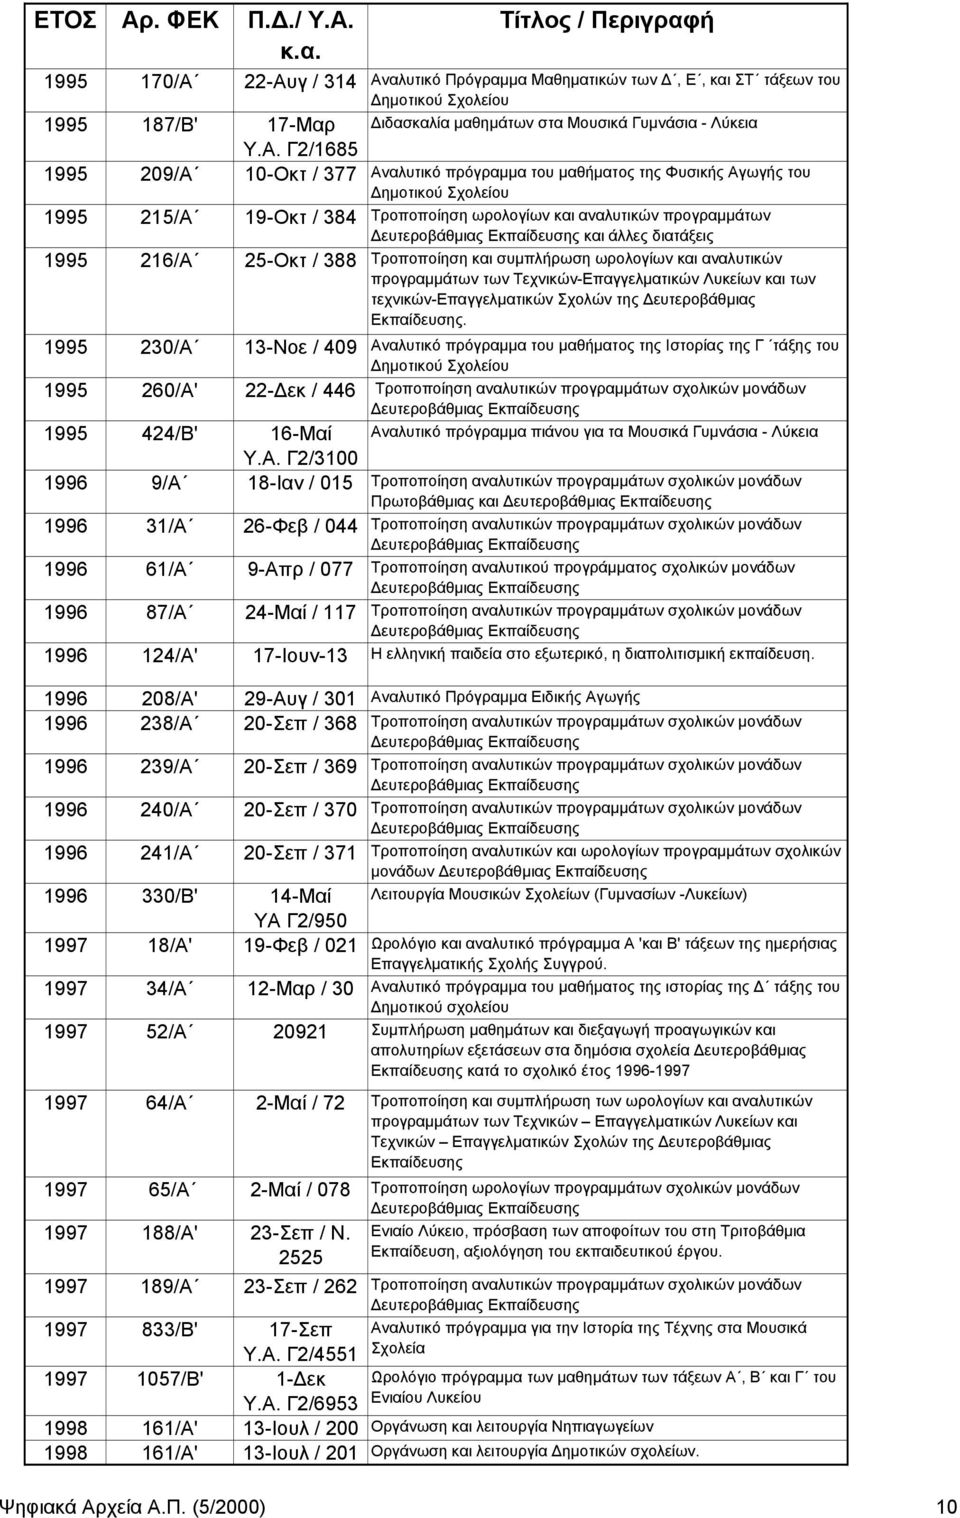 Αναλυτικό πρόγραμμα του μαθήματος της Φυσικής Αγωγής του ημοτικού Σχολείου 1995 215/Α 19-Οκτ / 384 Τροποποίηση ωρολογίων και αναλυτικών προγραμμάτων και άλλες διατάξεις 1995 216/Α 25-Οκτ / 388